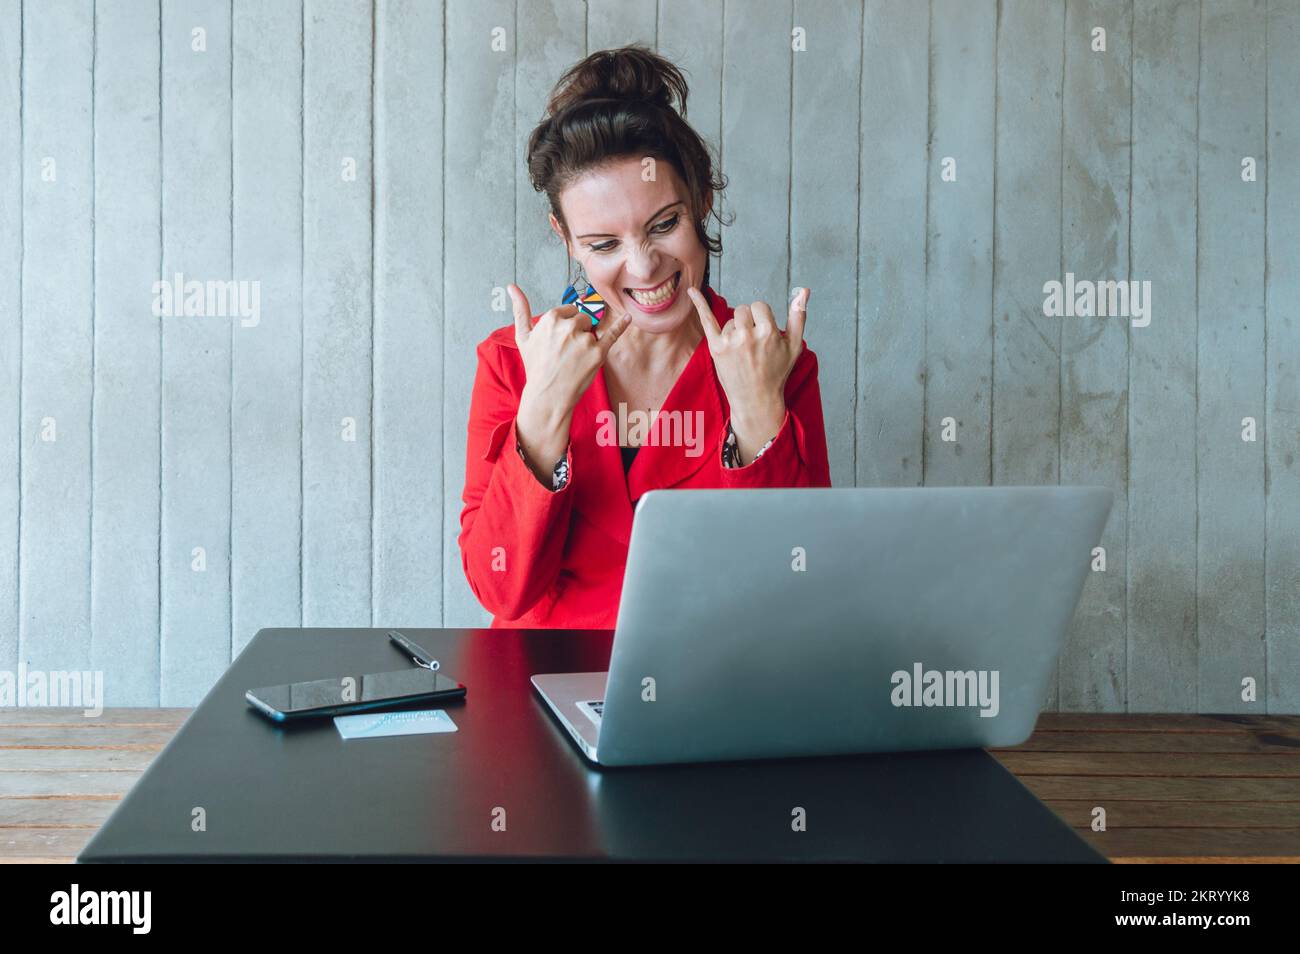 freelance femme caucasienne avec son ordinateur portable assis dans un restaurant, très heureux avec son travail et gagné de l'argent, concept d'affaires, espace de copie. Banque D'Images